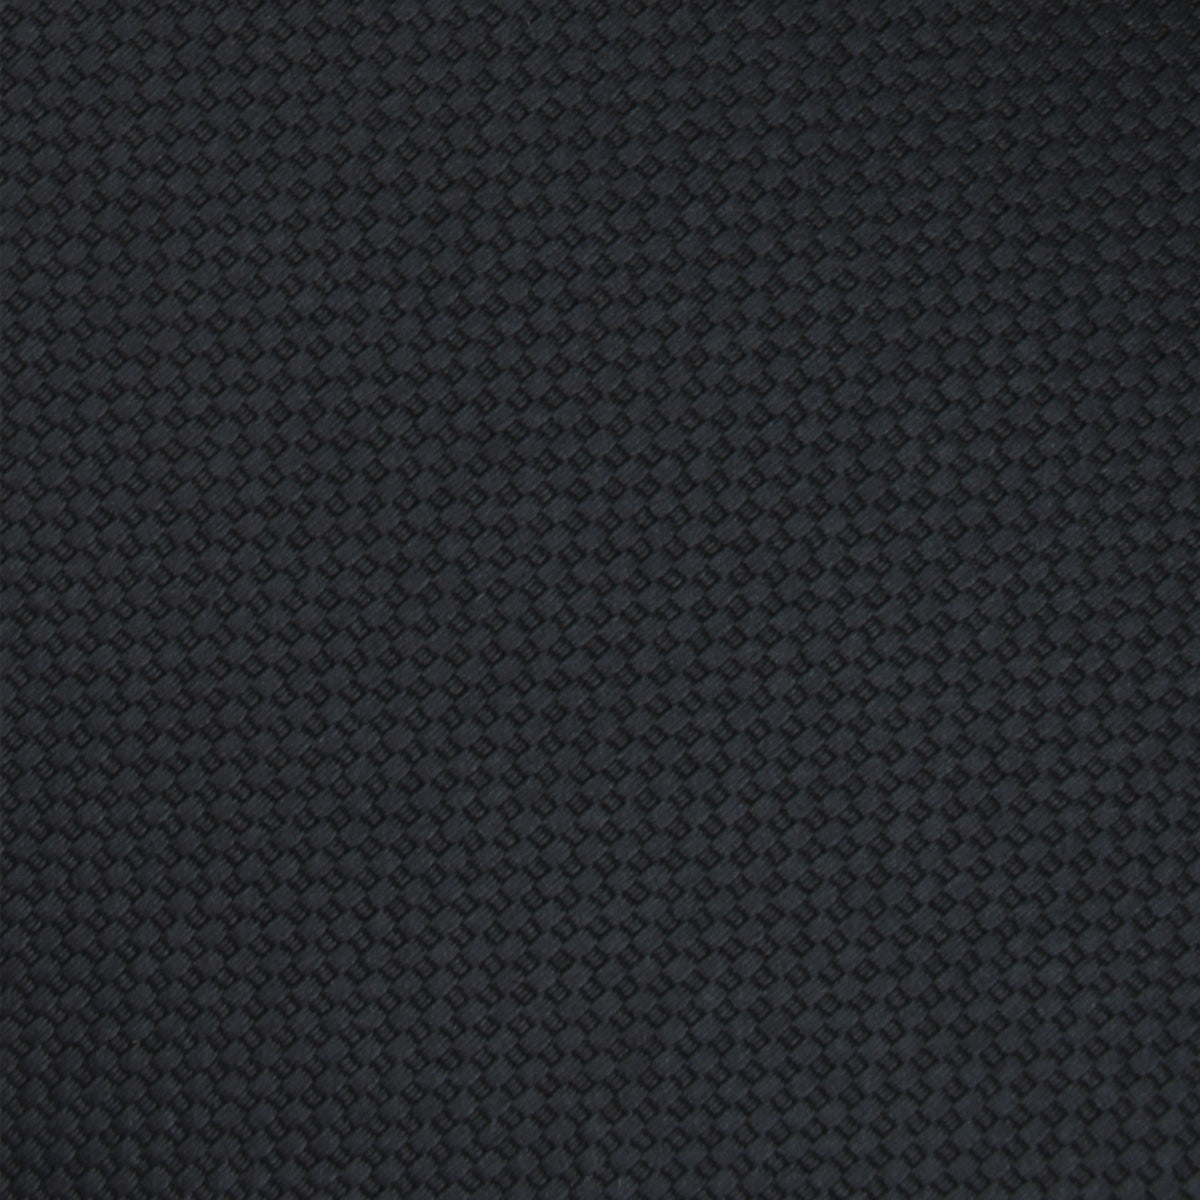 Black Basket Weave Necktie Fabric